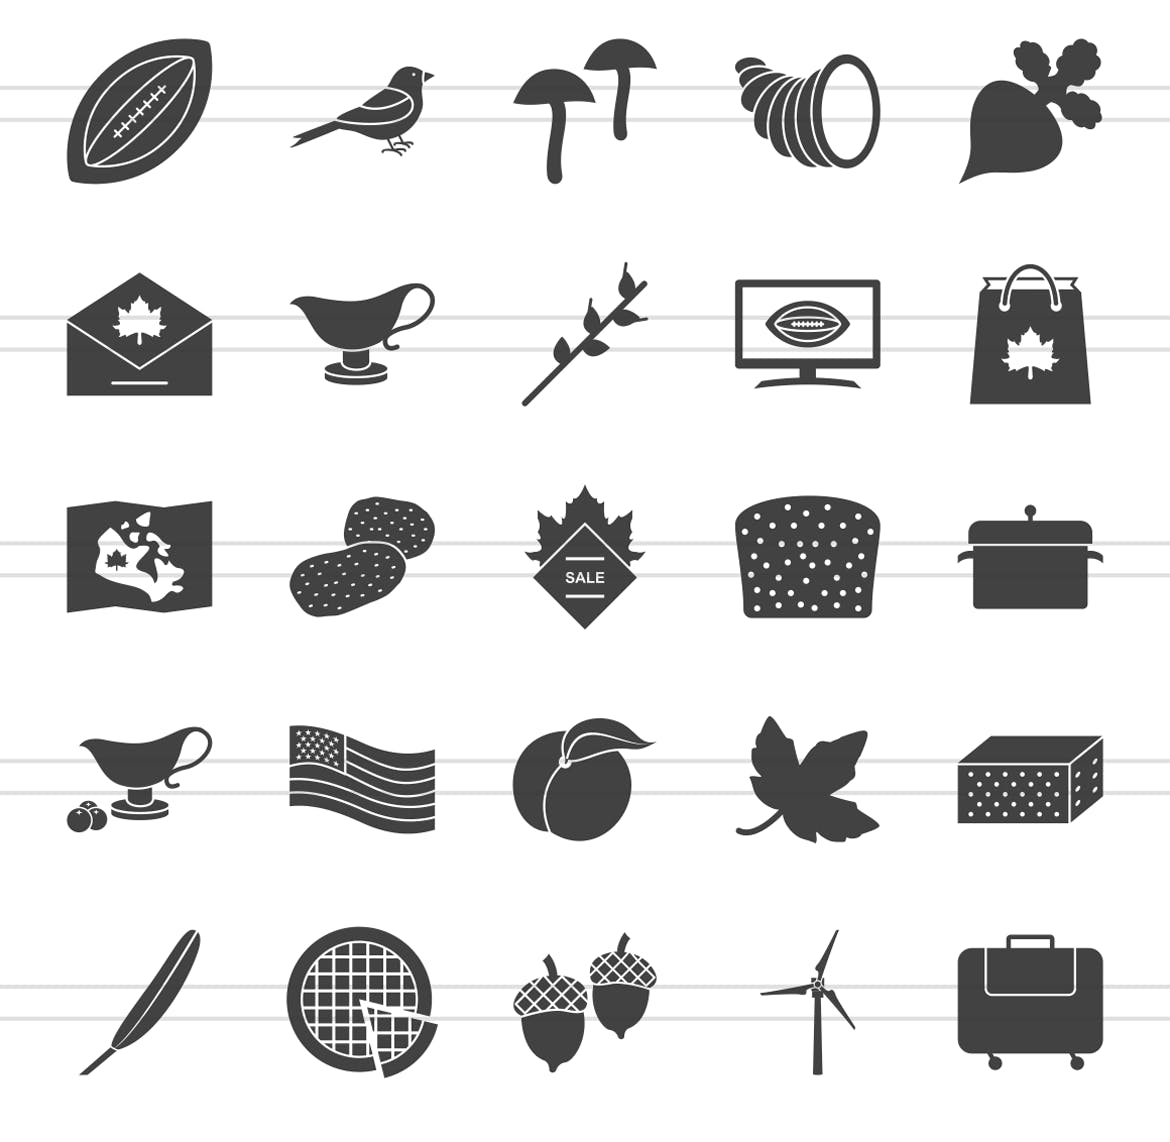 50枚感恩节主题矢量字体素材库精选图标 50 Thanksgiving Glyph Icons插图(2)